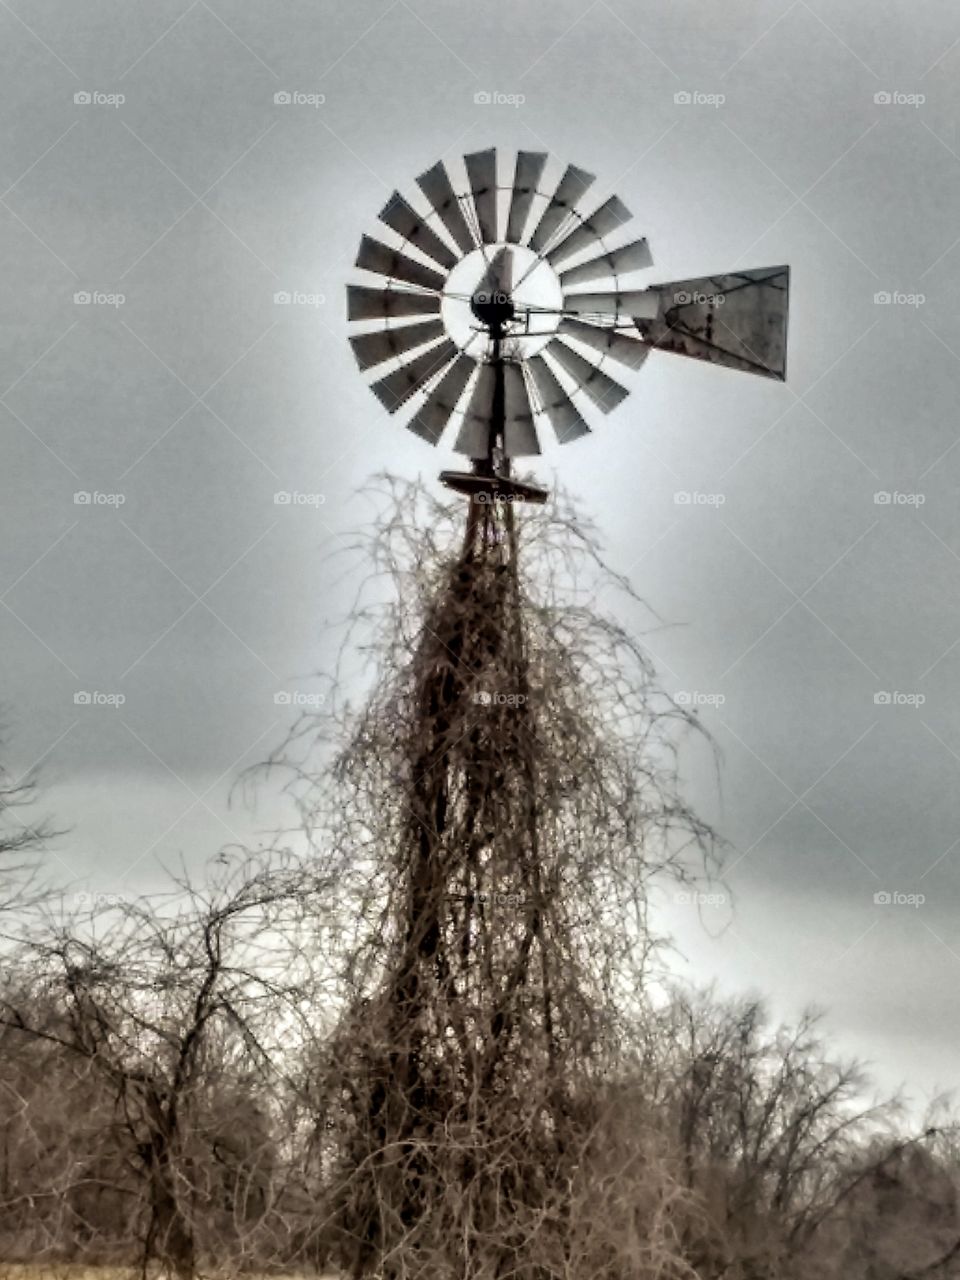 Working windmill in rural Missouri.